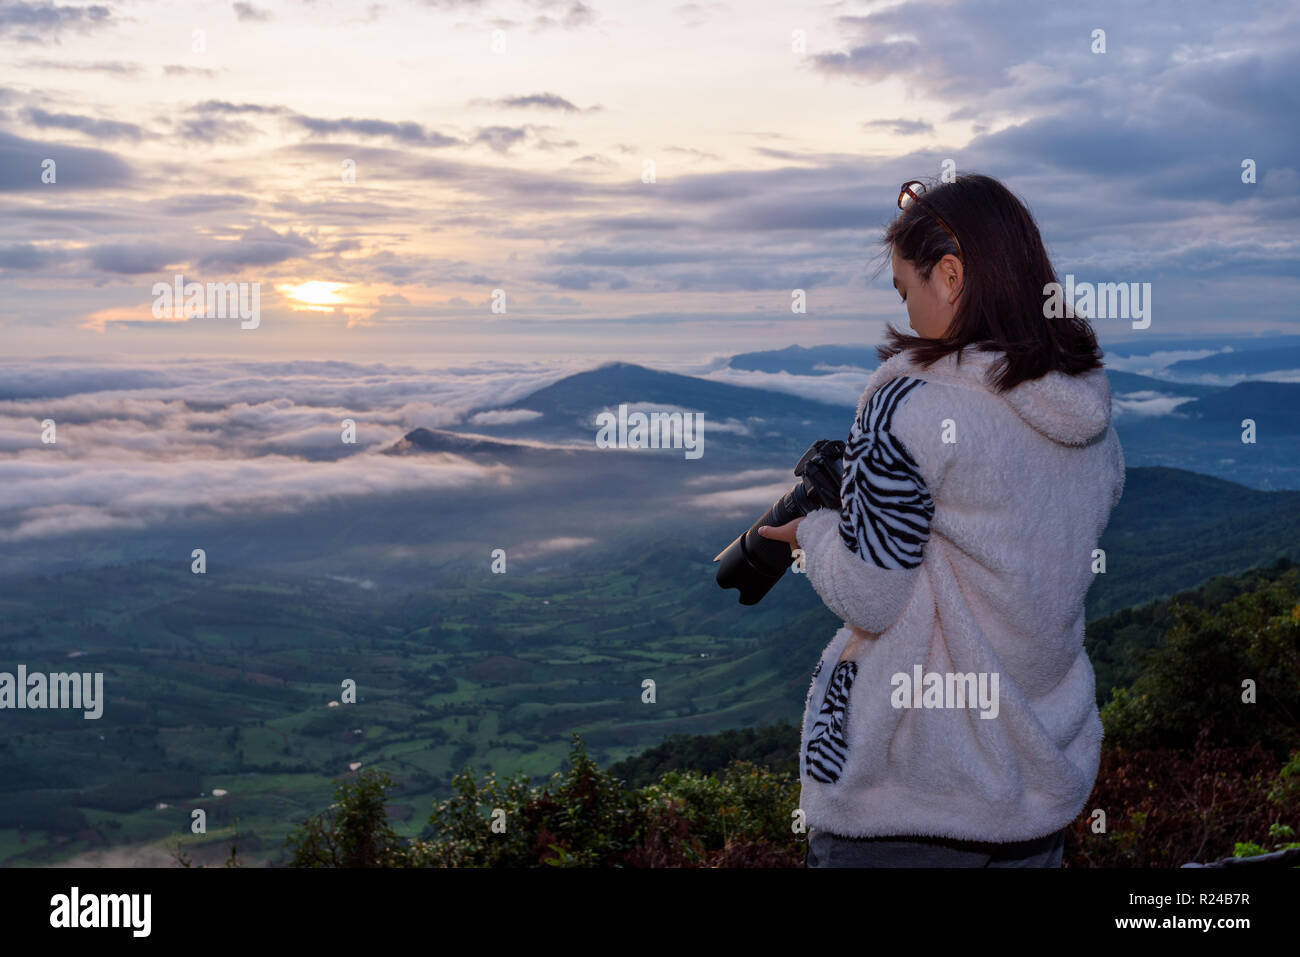 Frau touristische betrachten die Kamera nach einem Foto auf Natur Landschaft der Sonne, Nebel und die Berge nehmen während der Sunrise Hintergrund auf Phu Ruea Stockfoto